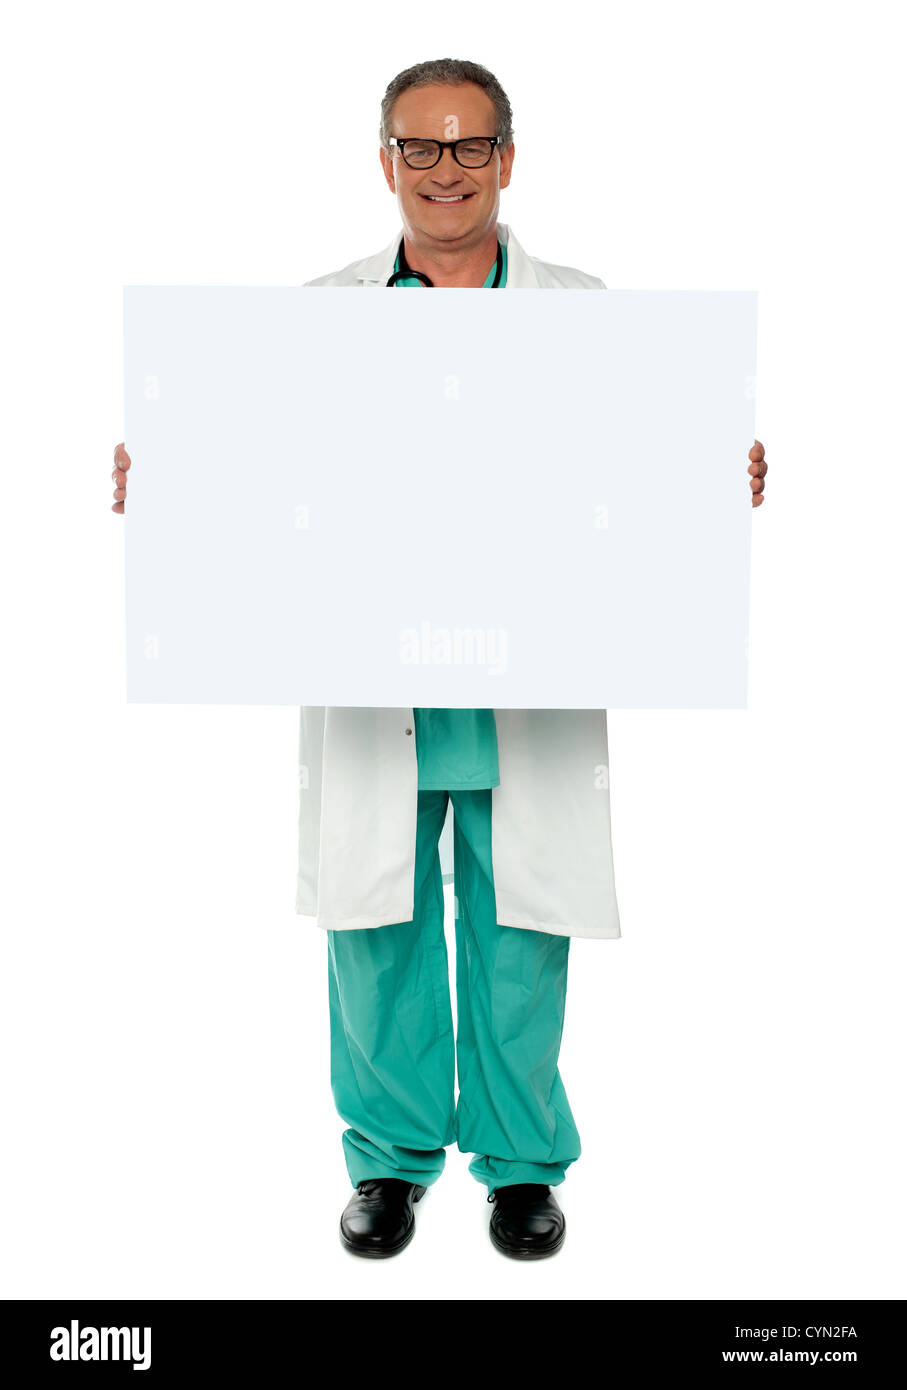 Senior Medical professional visualizzazione vuoto bianco banner per la fotocamera Foto Stock